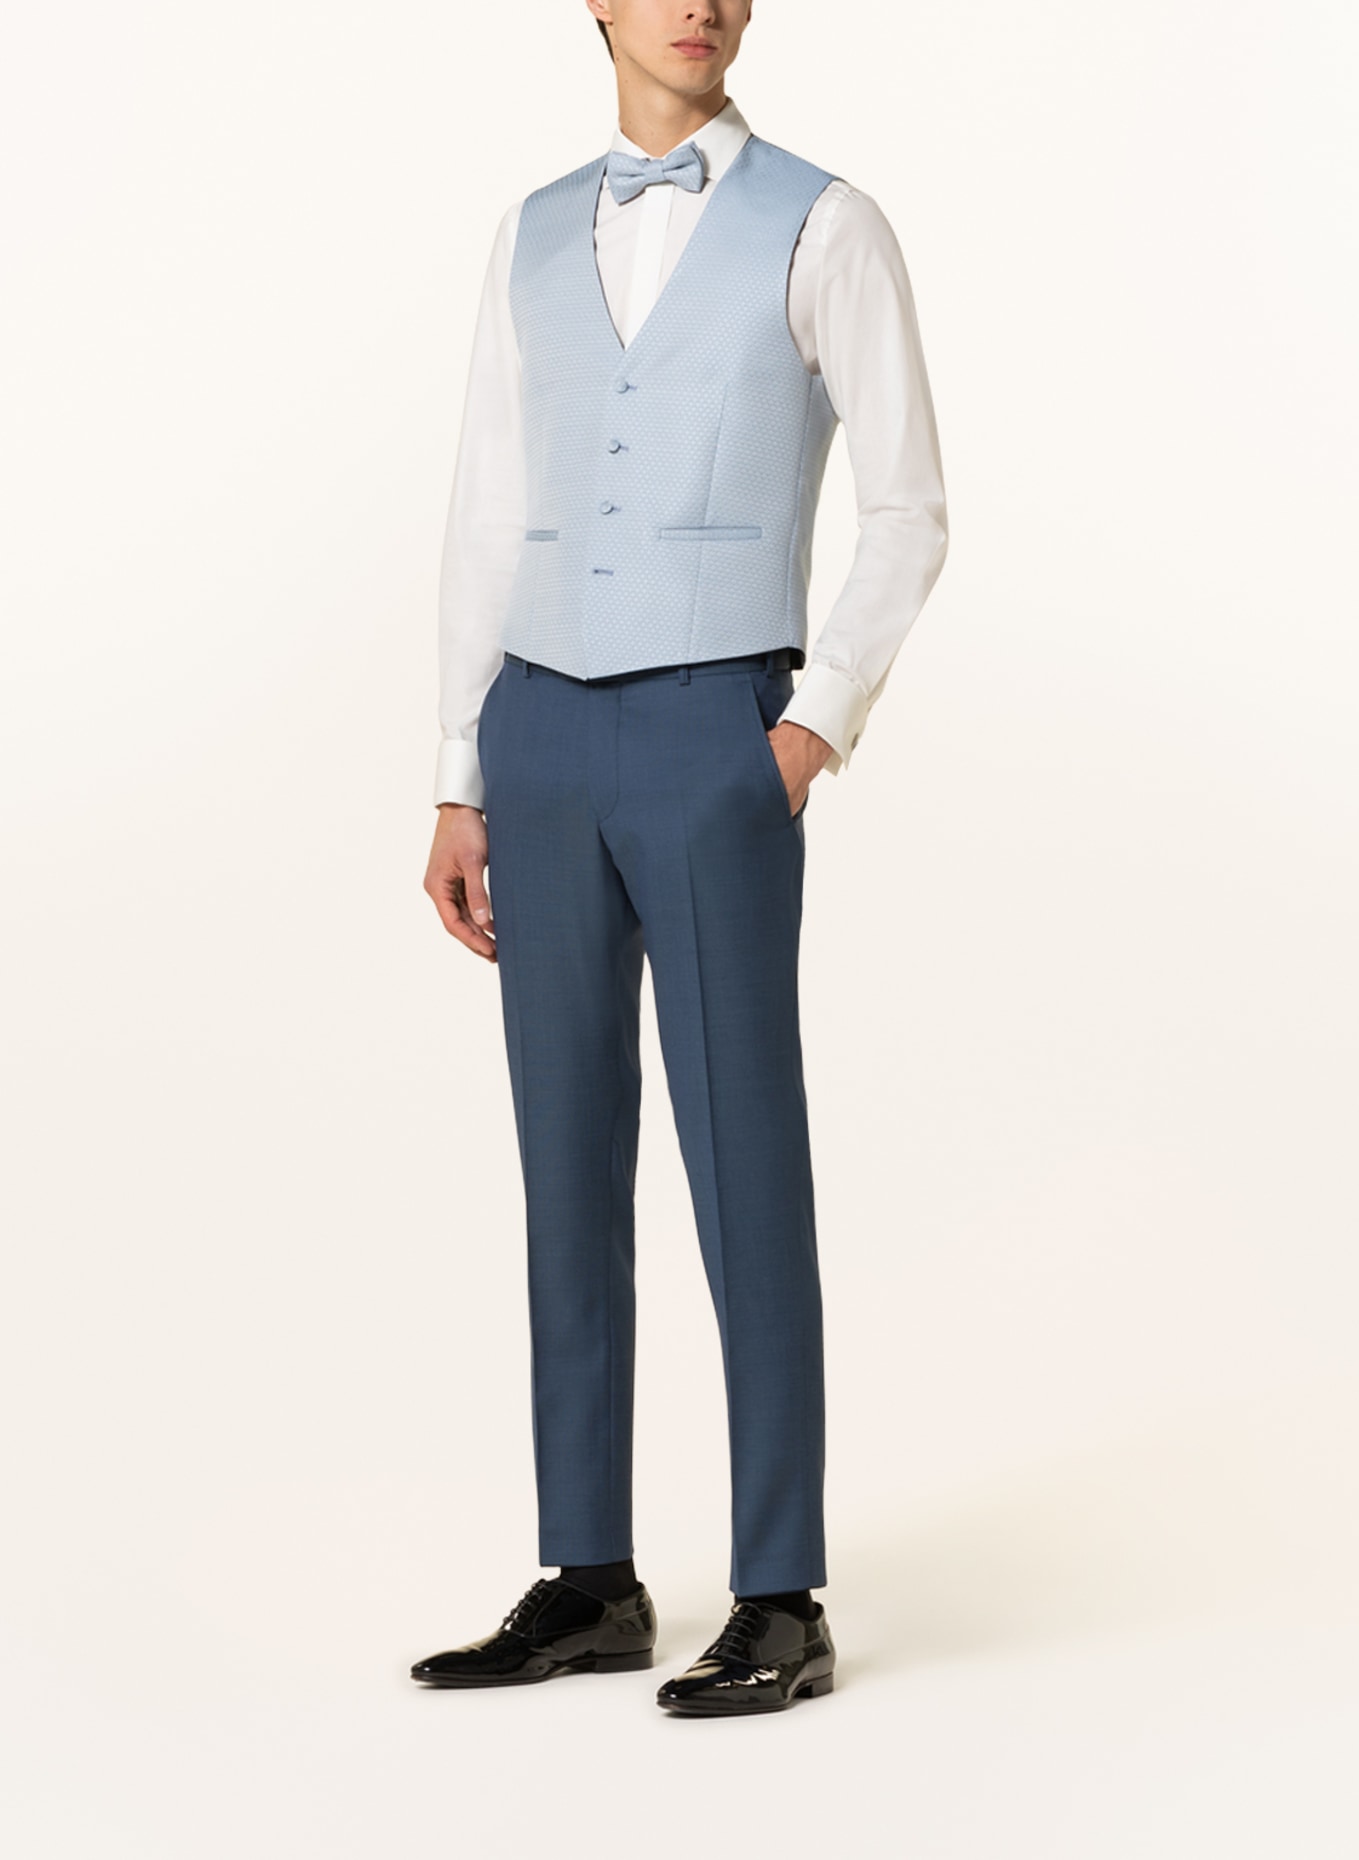 WILVORST Suit vest extra slim fit, Color: 030 hell Blau gem. (Image 3)